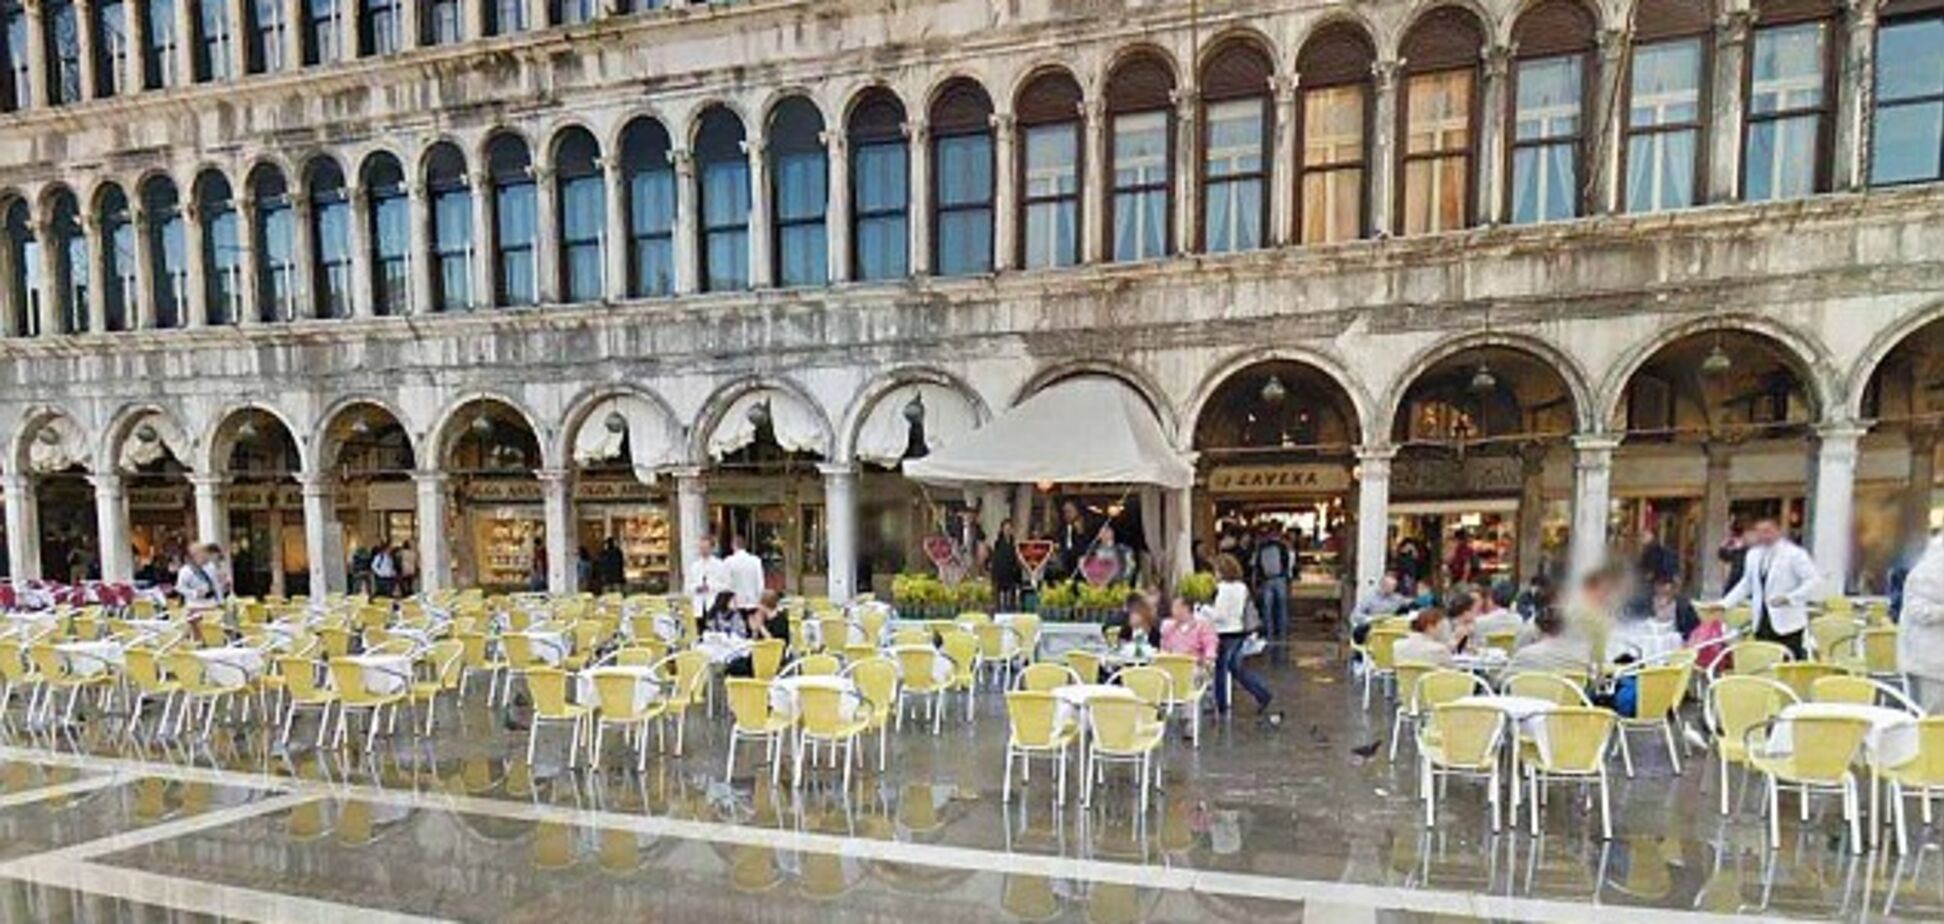 За музику і краєвид: у Венеції розгорівся скандал із туристом через 'подвійні ціни' в кафе